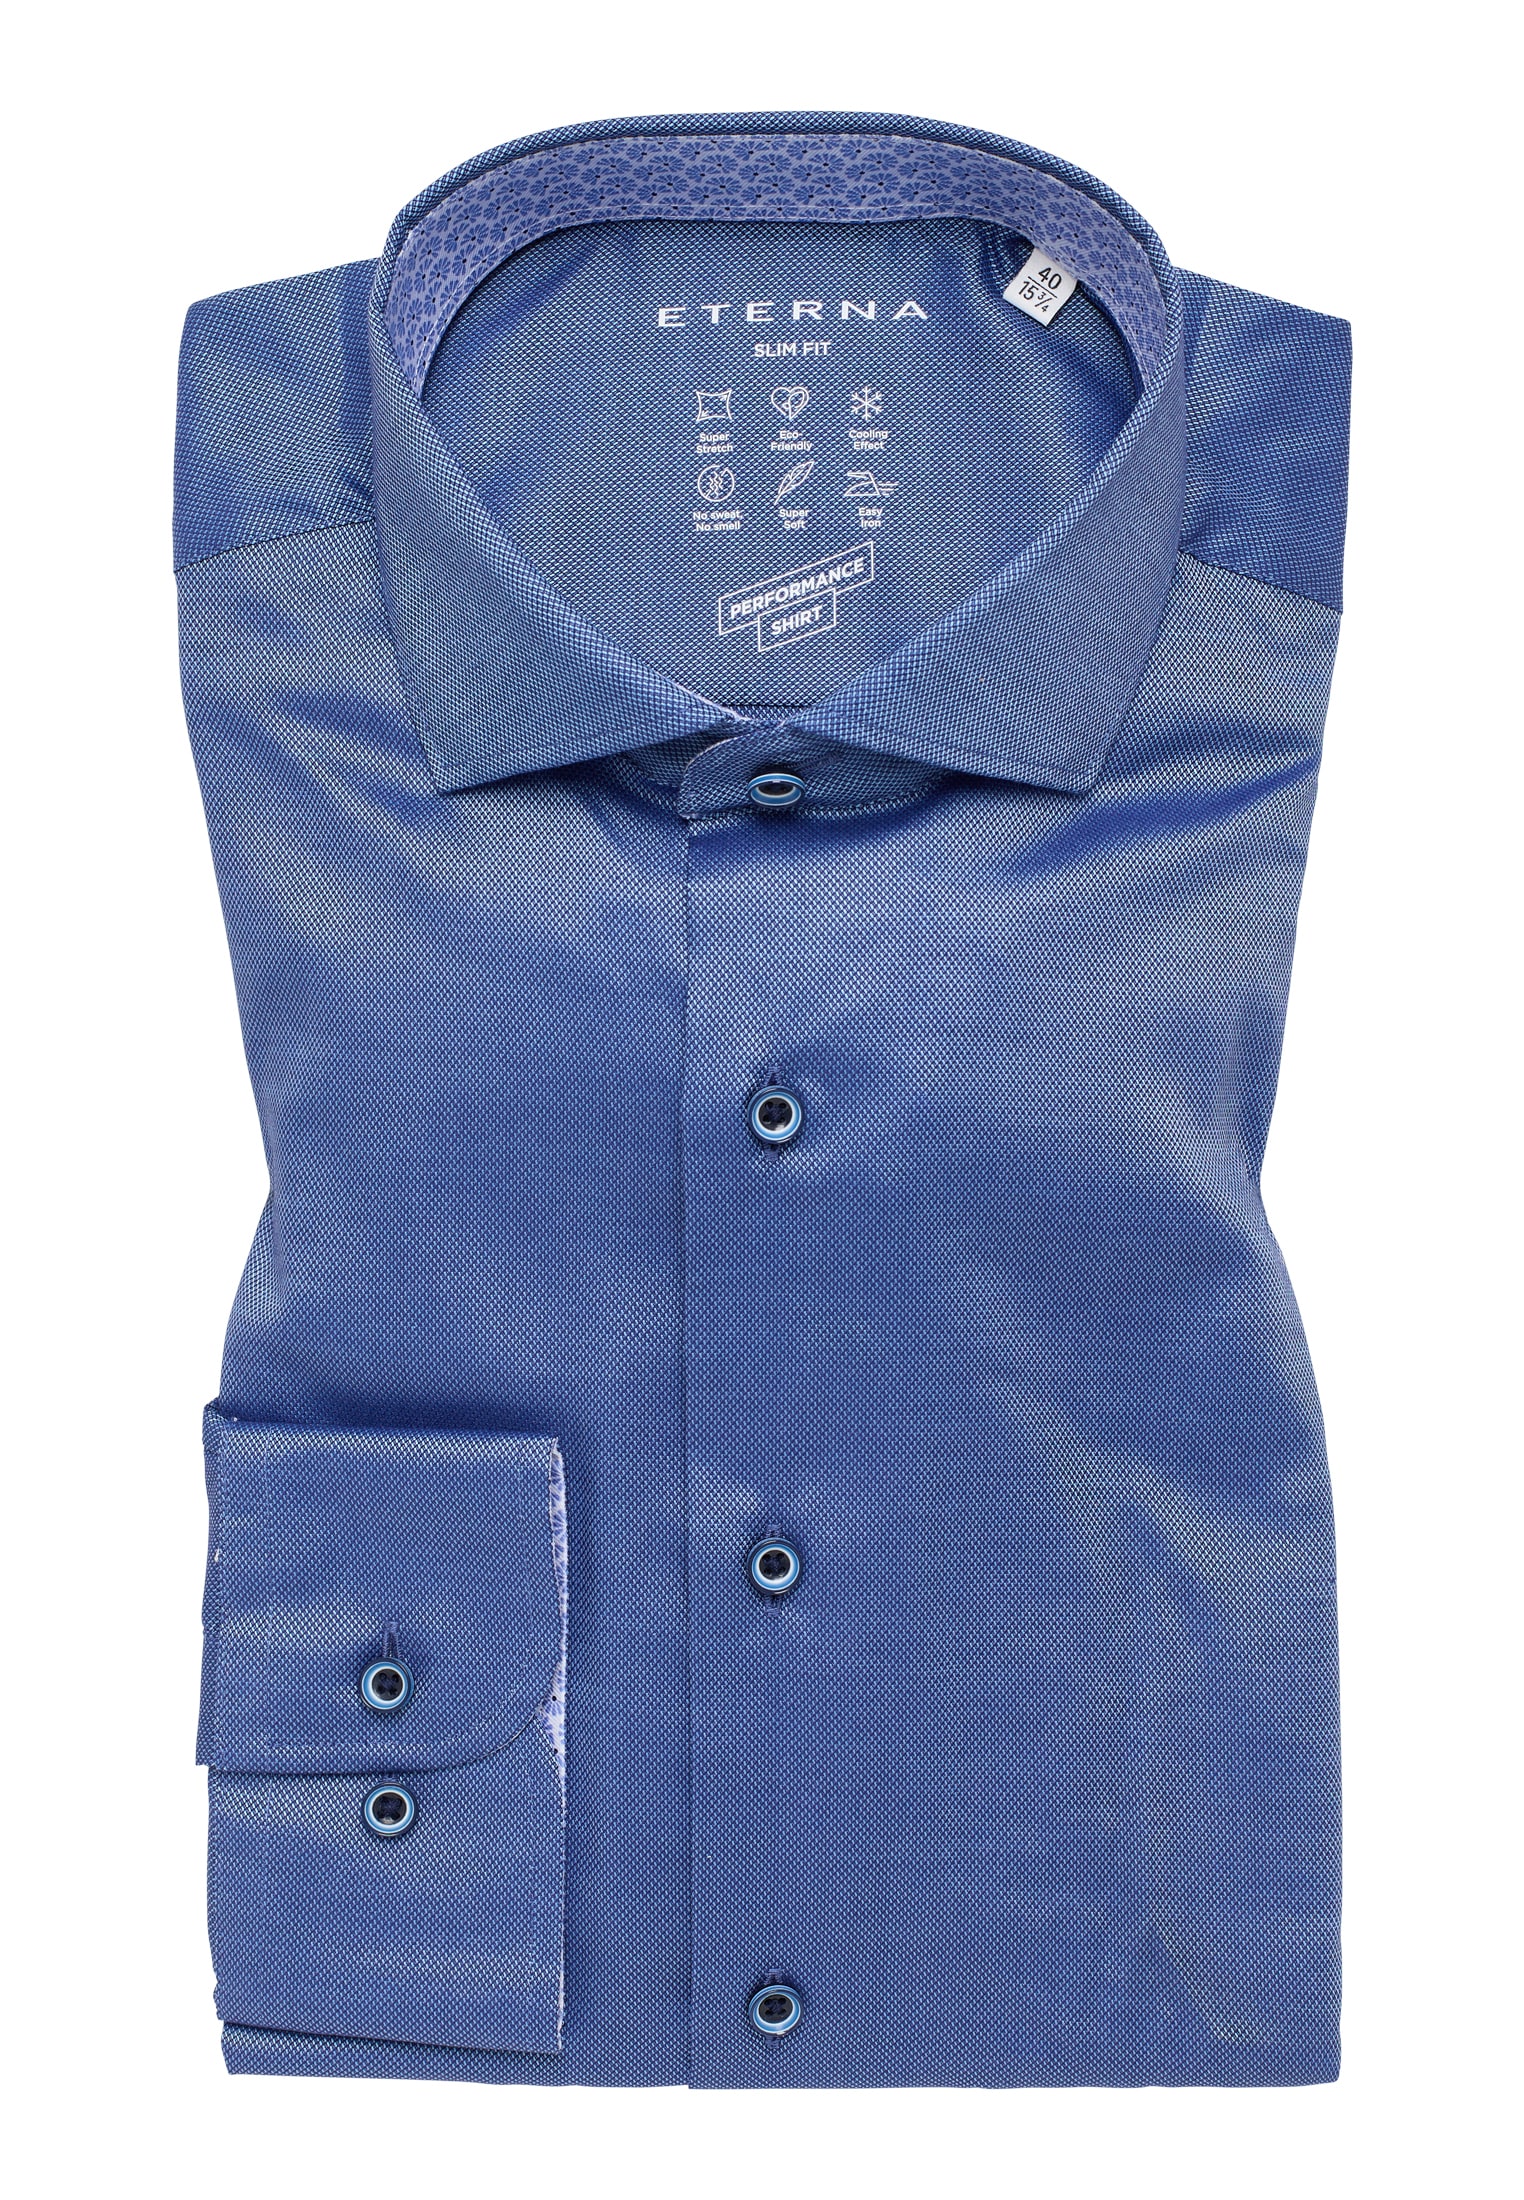 | Performance FIT Shirt strukturiert | blau 1SH12542-01-41-41-1/1 Langarm blau 41 | in | SLIM